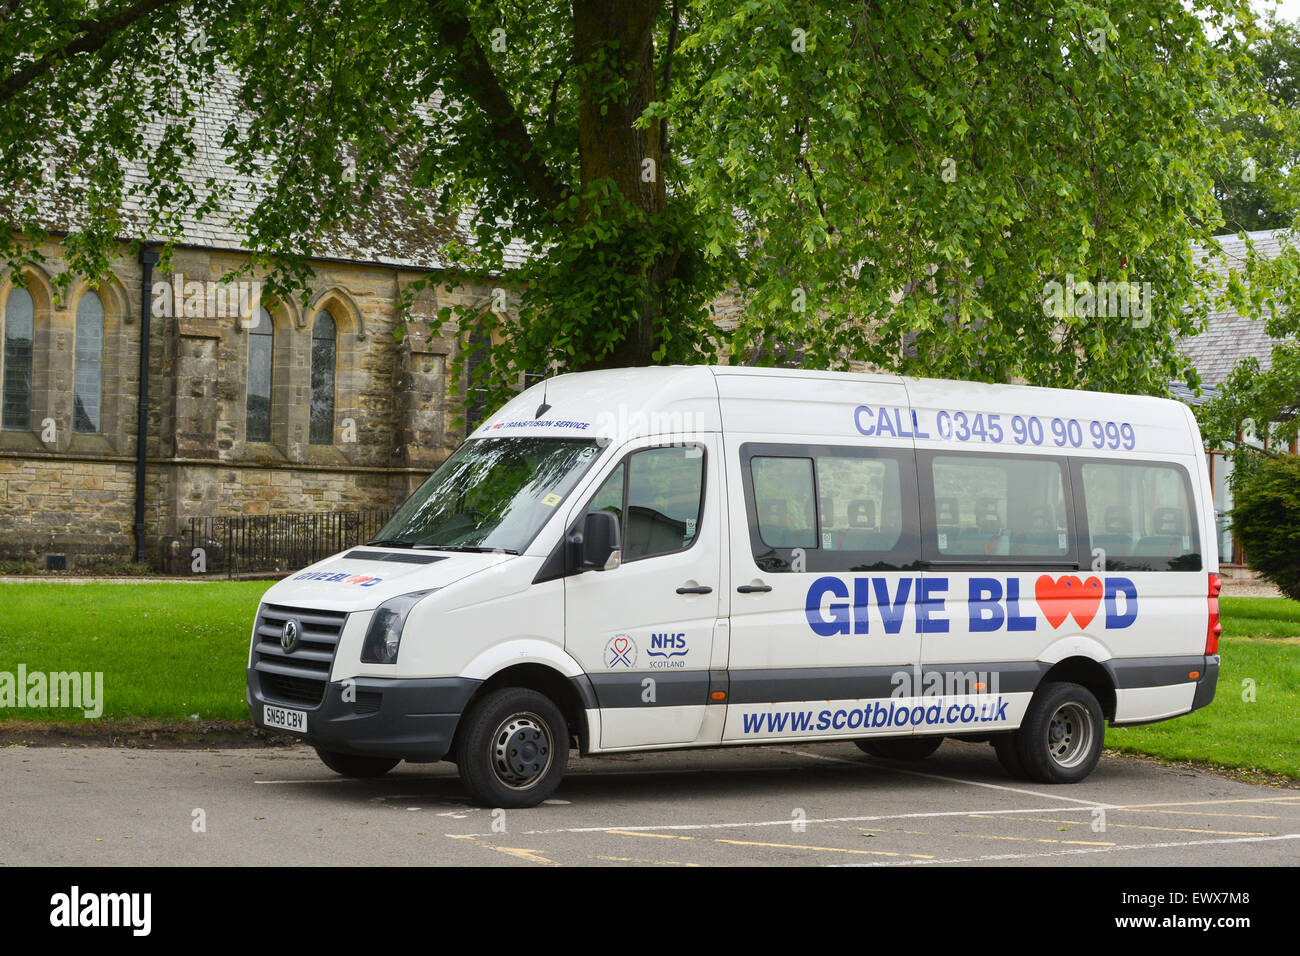 Transfusión de sangre escocesa camioneta estacionada en la iglesia hall aparcamiento durante la sesión de Donación de sangre Foto de stock